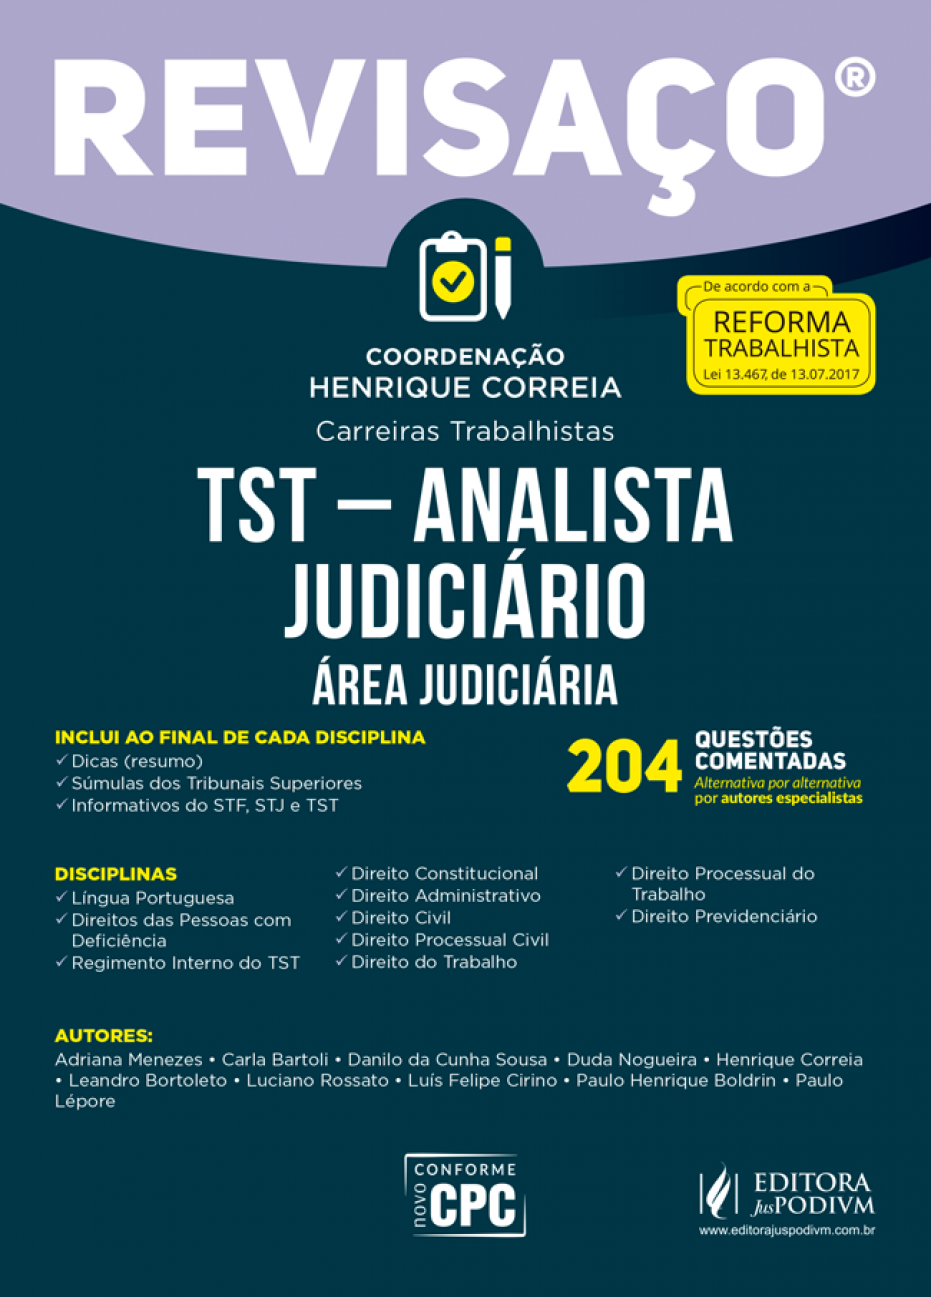 TST - Analista juduciário